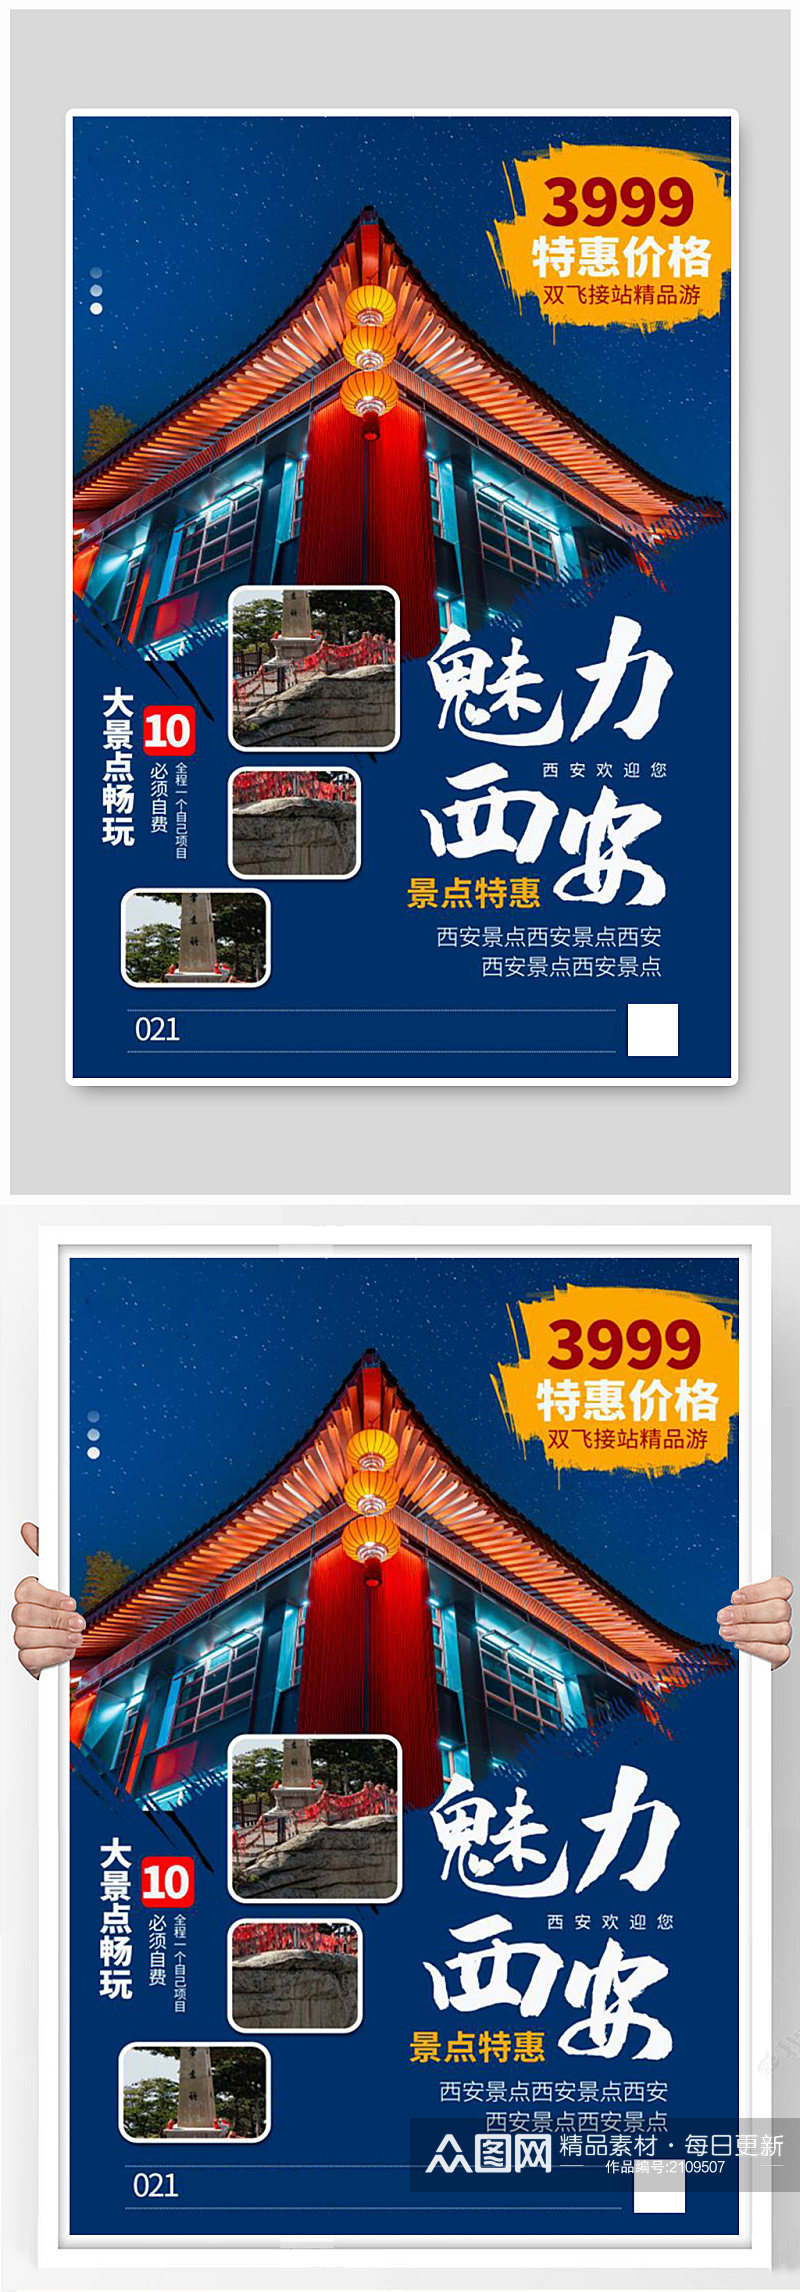 西安旅游促销海报素材